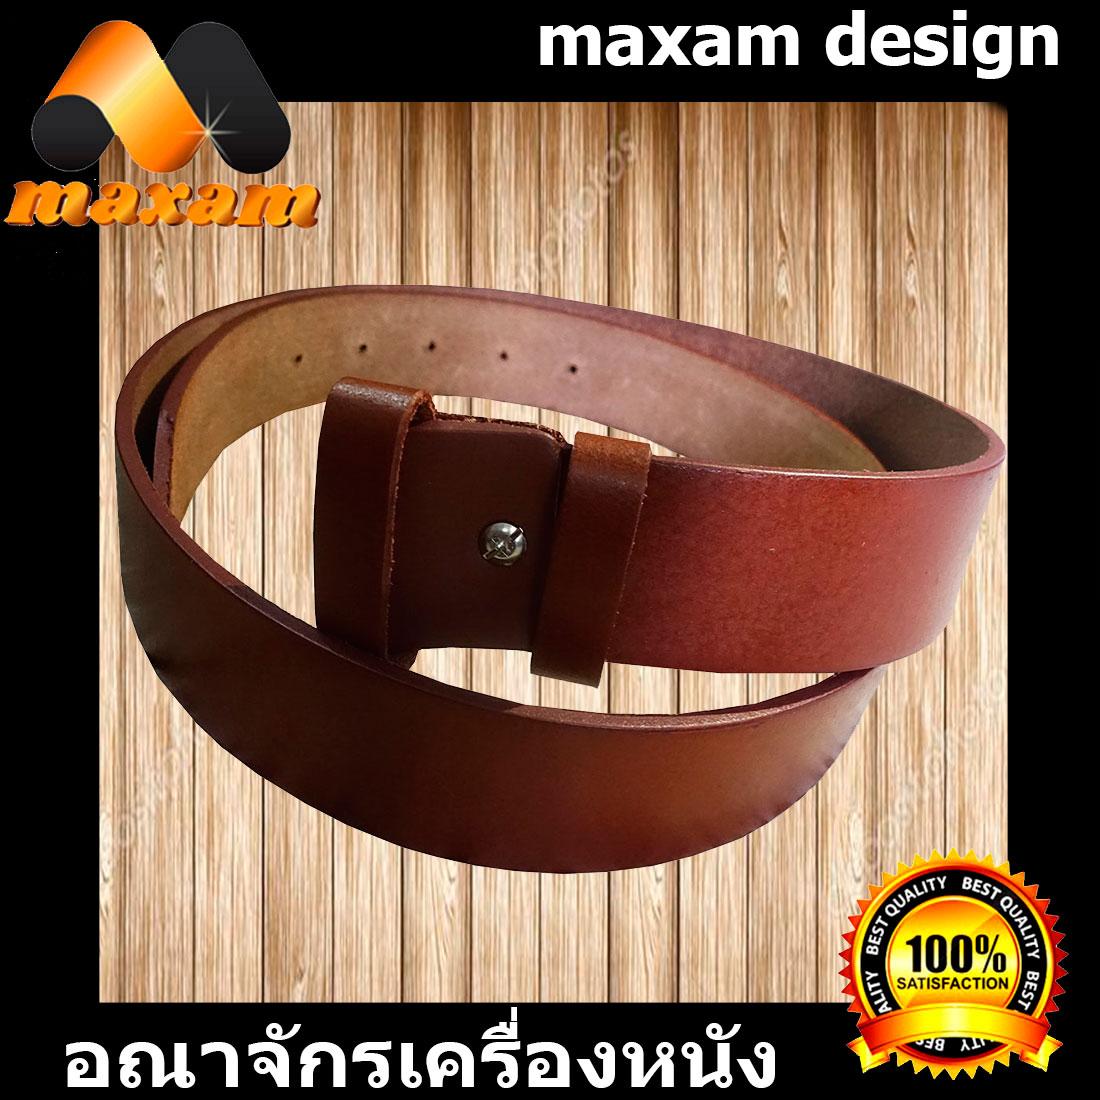 maxam design   ต้องใช้หนังแท้สิ! Genuine Cowhide Leather ใช้ของแท้ ใช้ทน ใช้นานใด้หลายปี นิศิตนักศึกษาชอบใช้  สายเข็มขัดหนังวัวอย่างแท้ๆ ยาวตลอดเส้น 42 นิ้ว เหมาะสำหรับท่านที่มีเอว 34-35-36-37 นิ้ว สีน้ำตาล     maxam design